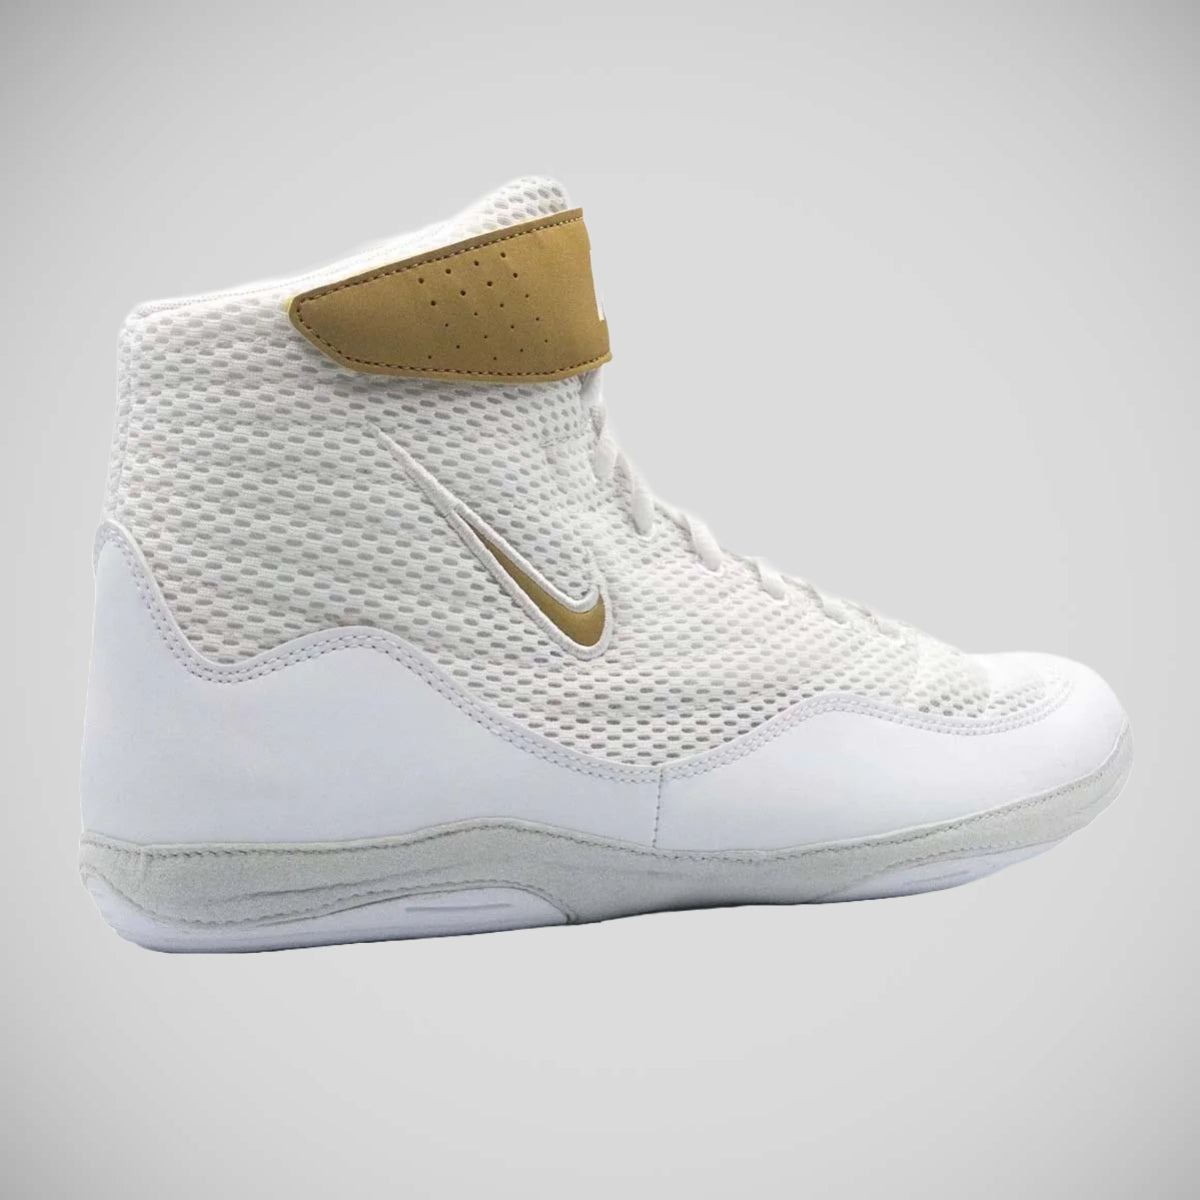 Nike Inflict 3 Gold Online | bellvalefarms.com